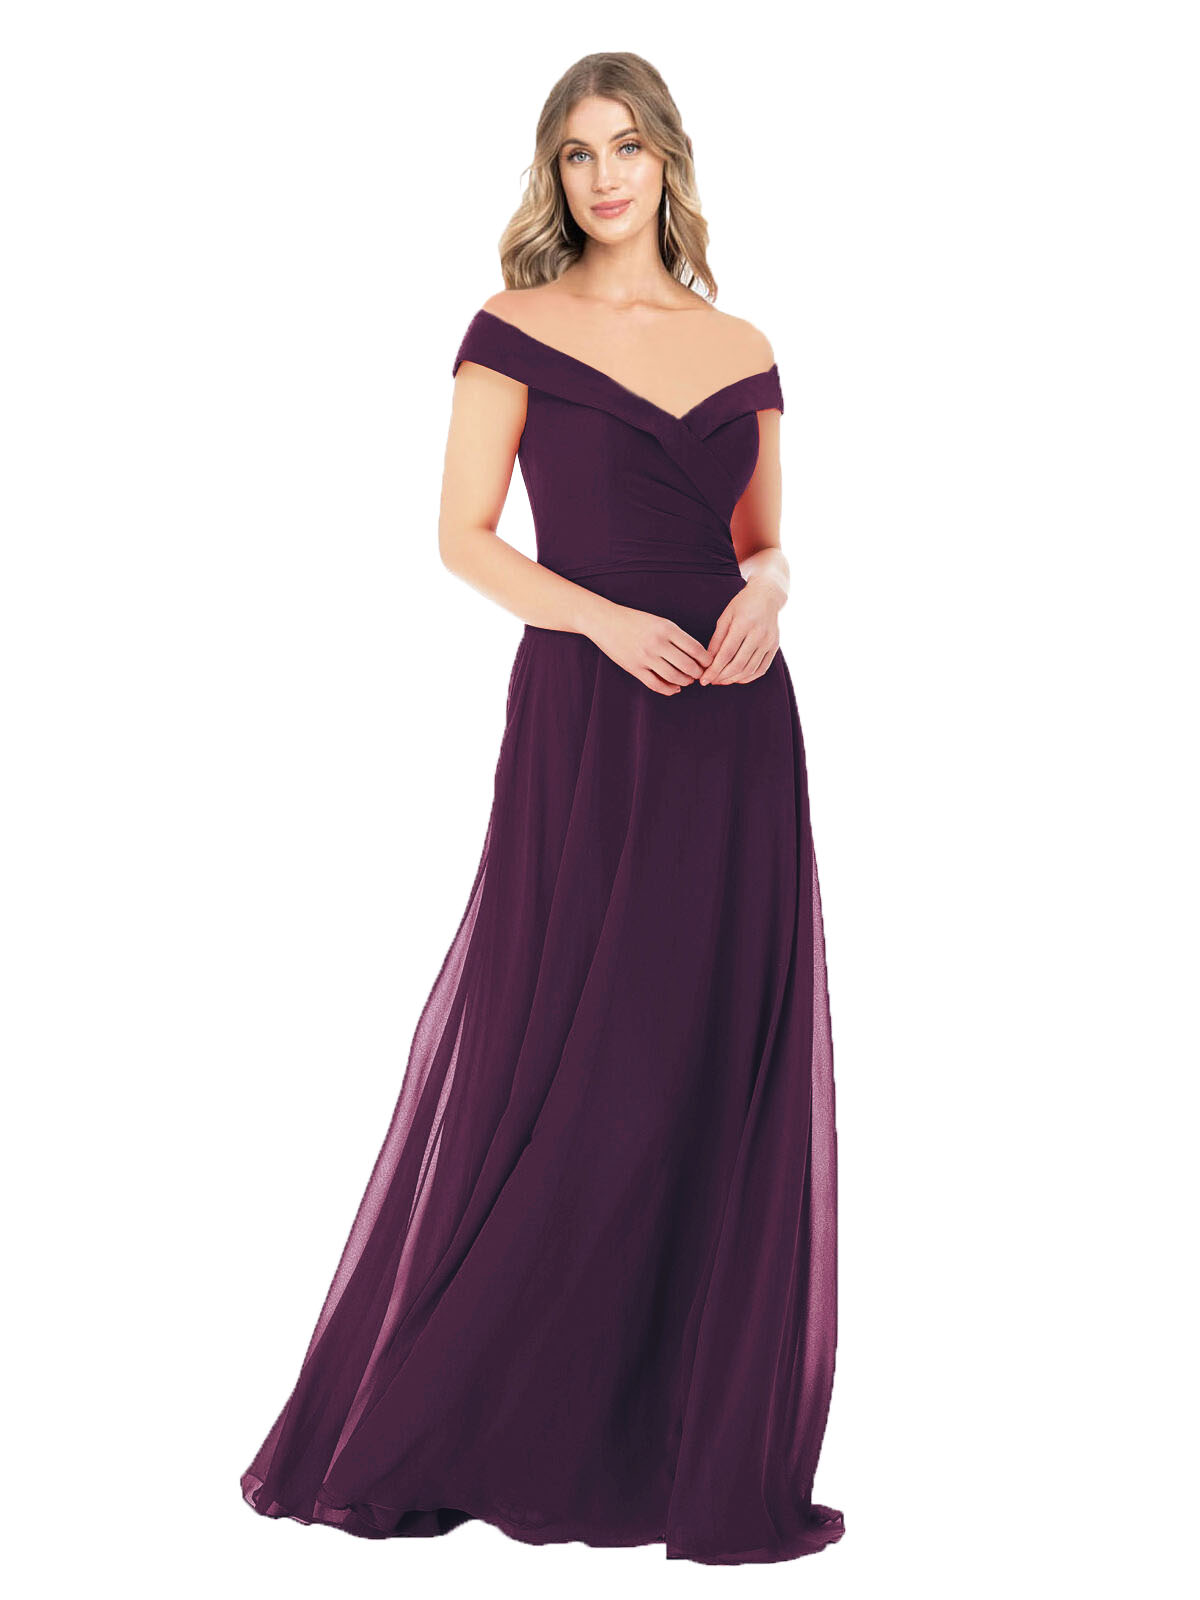 Grape A-Line Off the Shoulder Sleeveless Long Bridesmaid Dress Alva